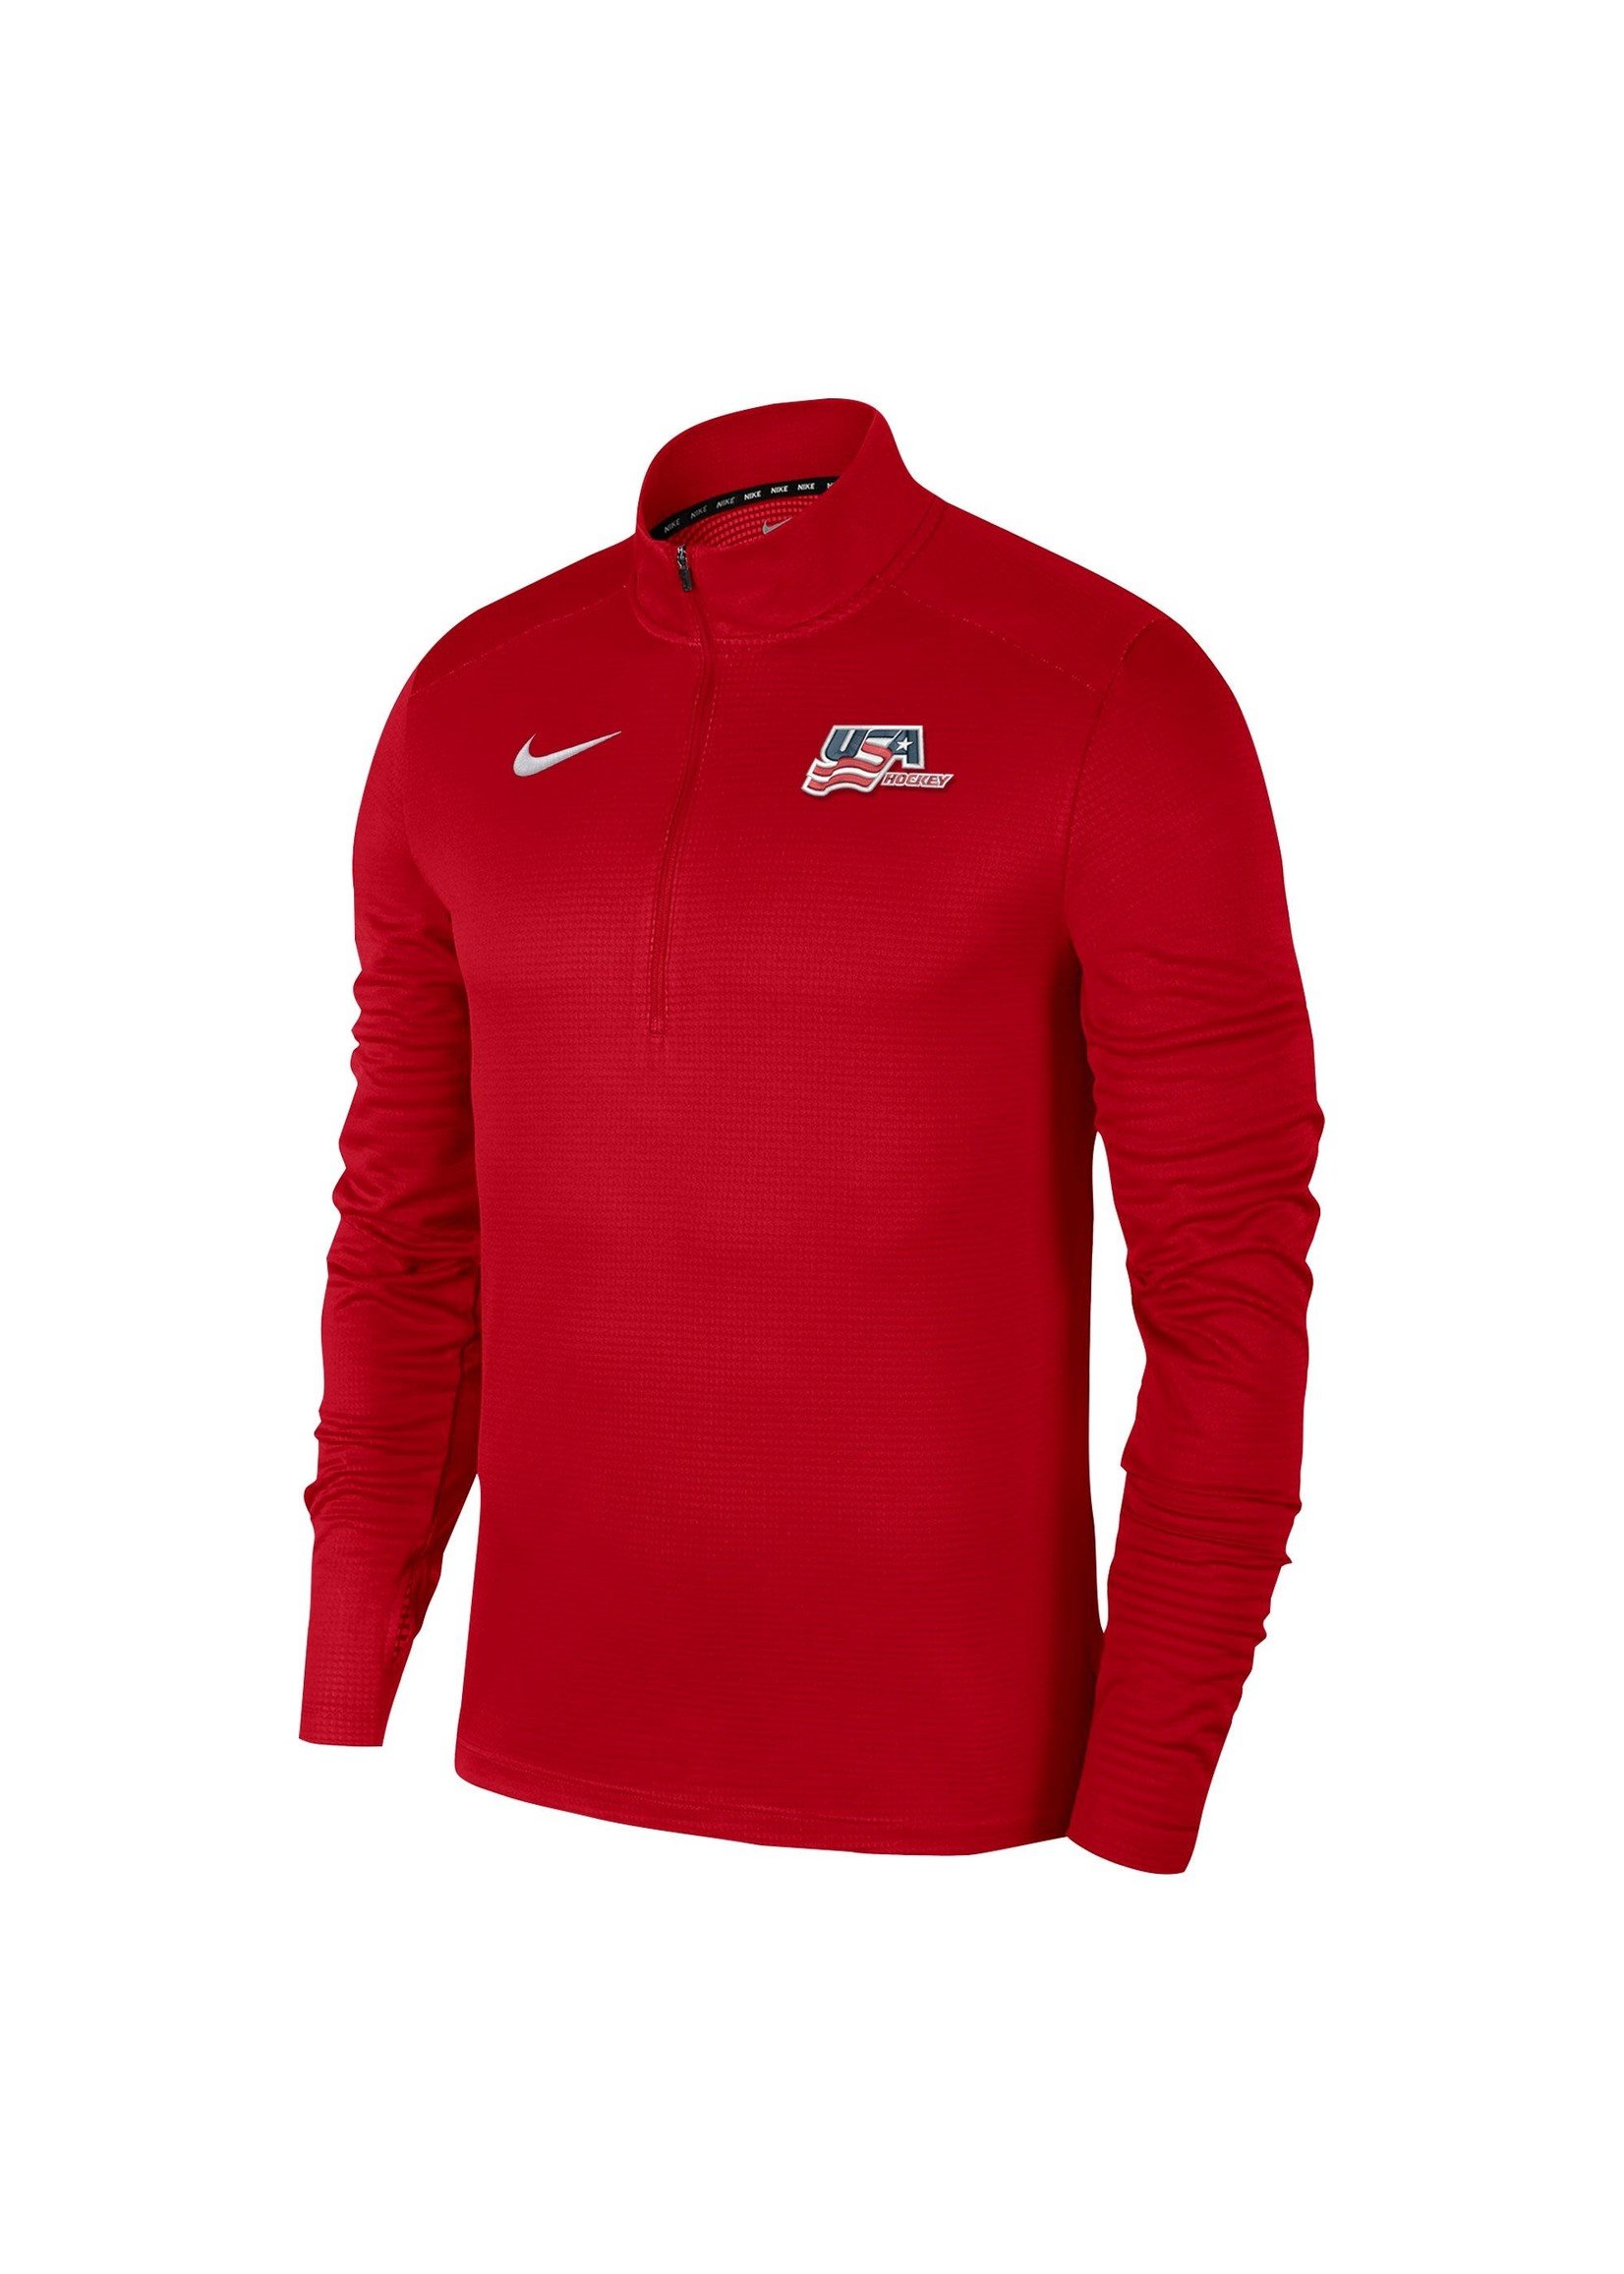 USAH Nike Pacer 1/4 Zip Long Sleeve